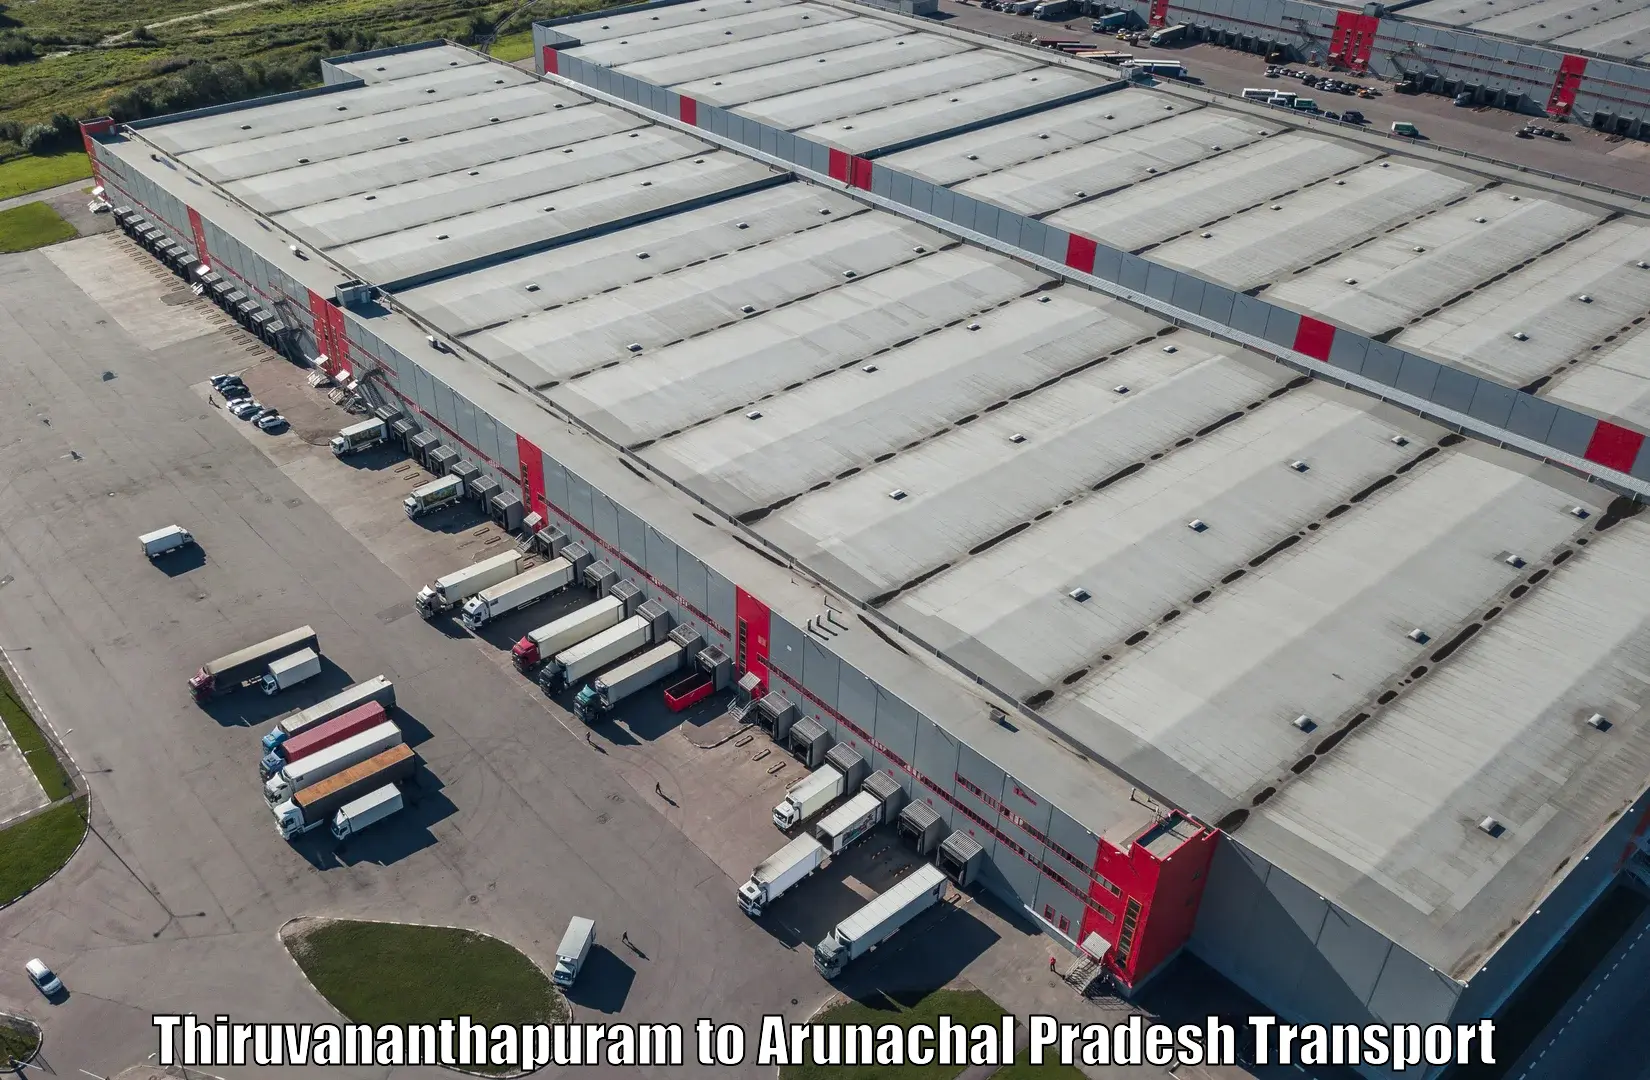 Truck transport companies in India Thiruvananthapuram to Ziro